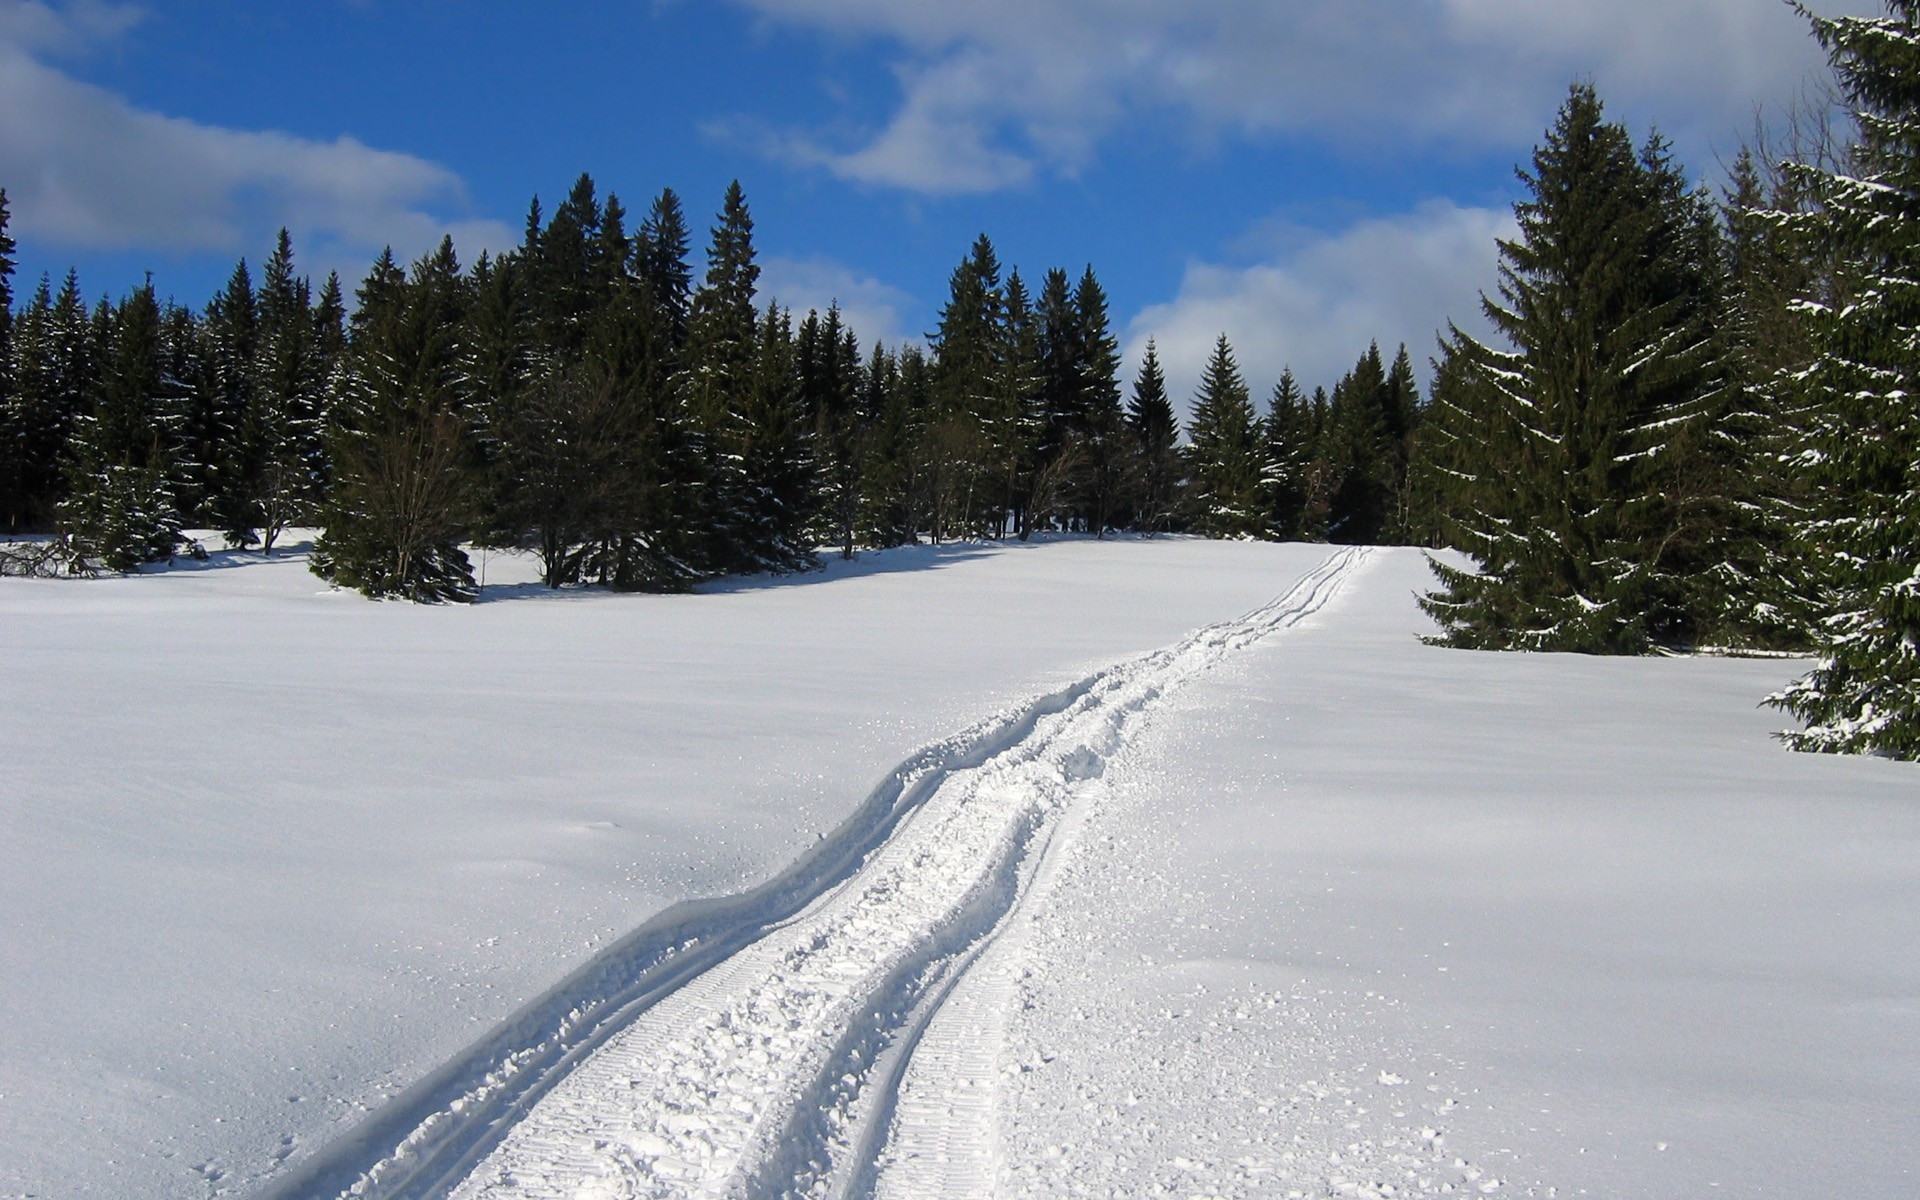 履带式设备在雪地上留下的痕迹